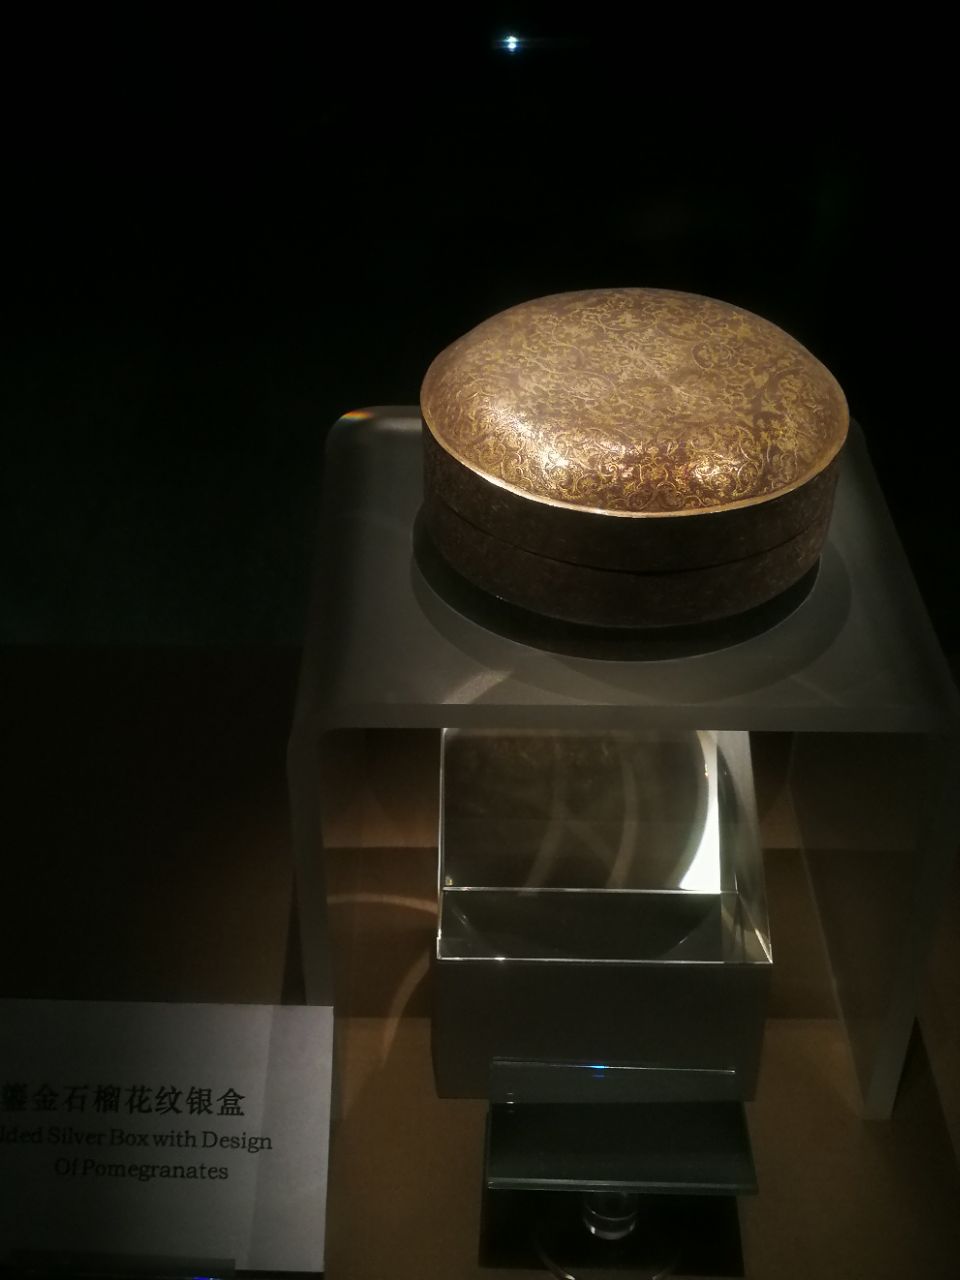 来西安必须来陕西历史博物馆参观才不枉此行,展品丰富,对了解中国